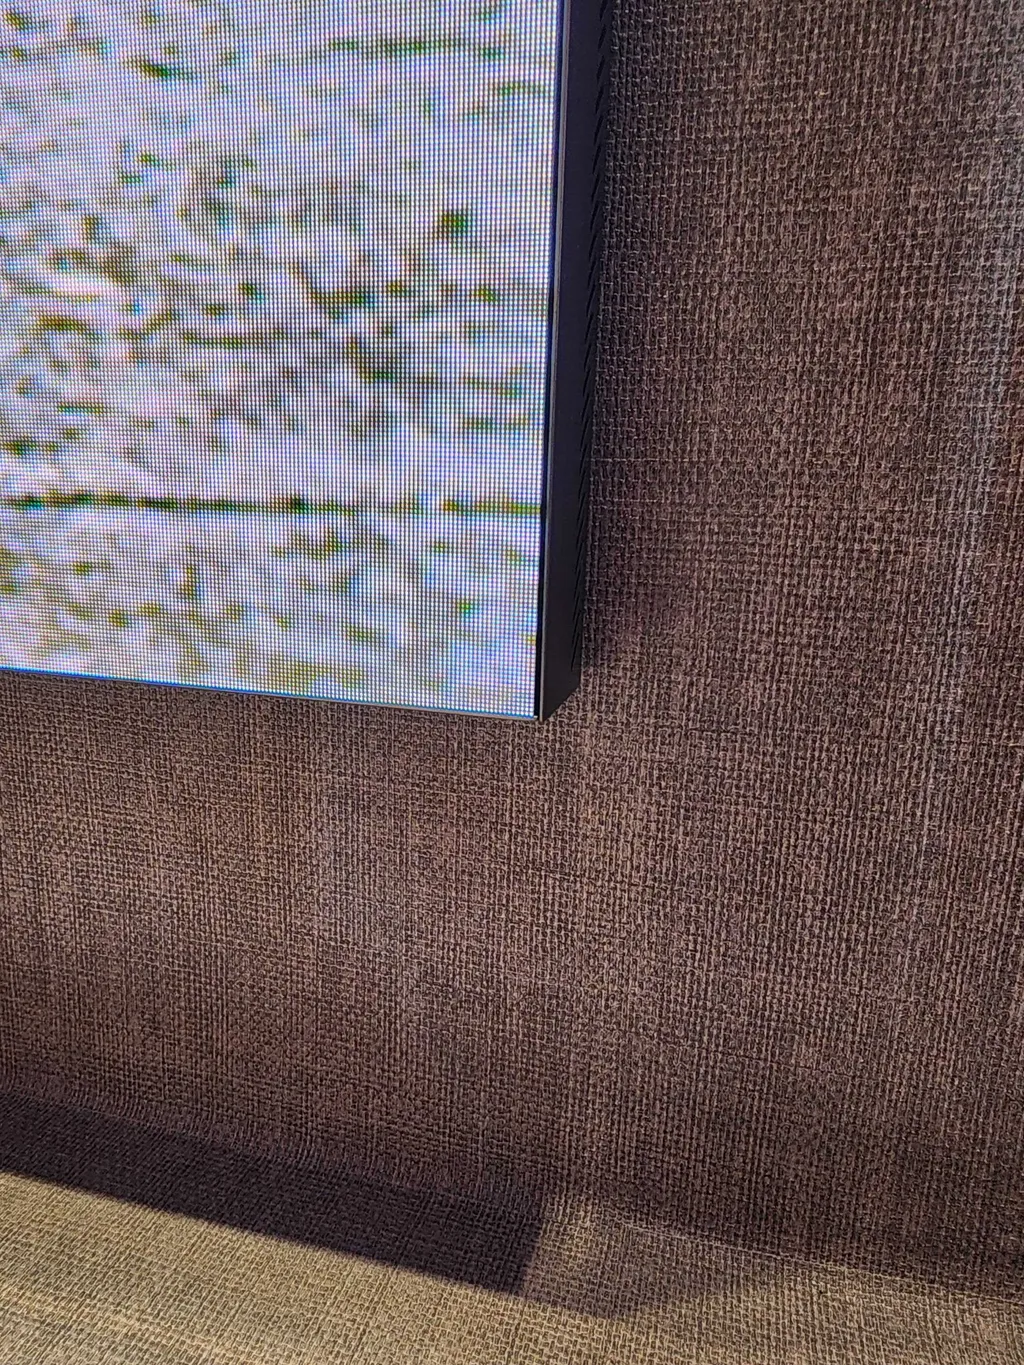 Além da qualidade de imagem turbinada, o painel Micro LED tem outro efeito surreal na TV — a ausência de bordas, algo visto apenas em materiais de marketing até então (Imagem: Felipe Junqueira/Canaltech)